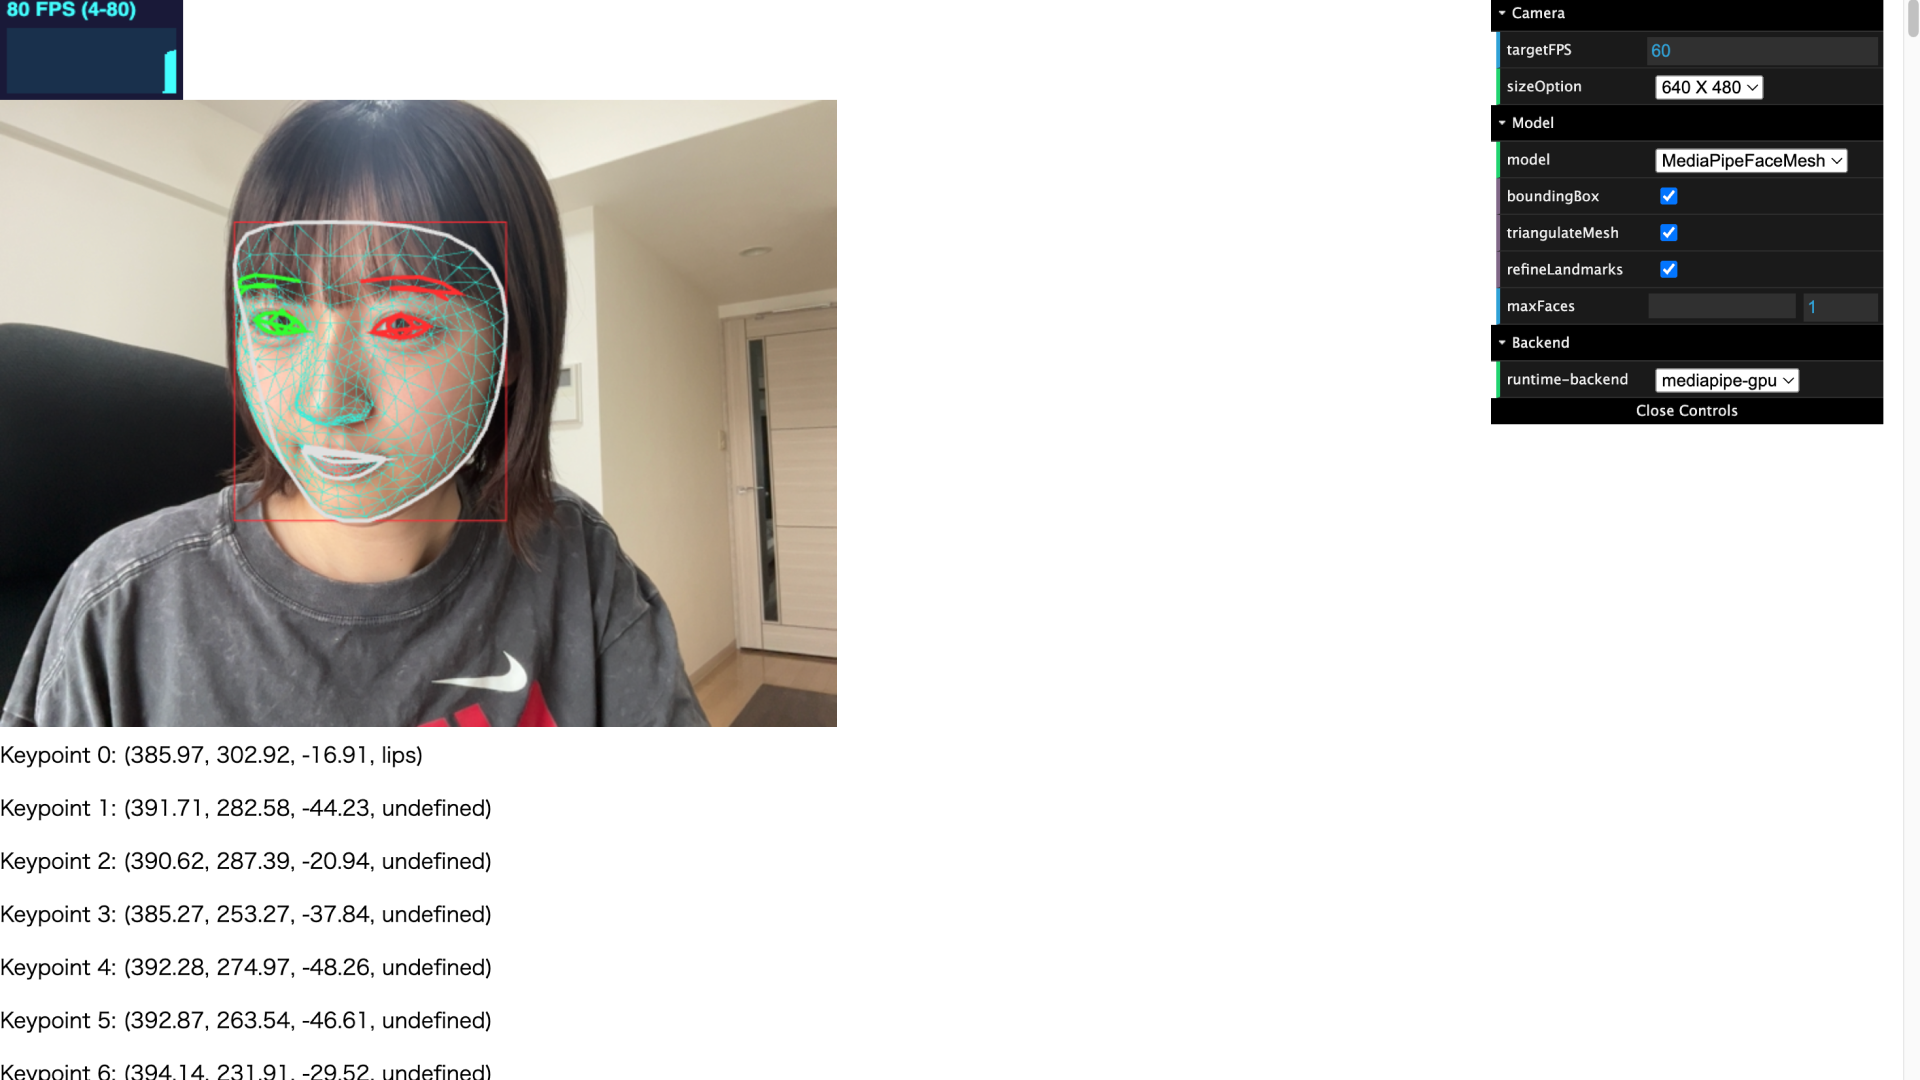 ウェブカメラで取得した動画を映したPC画面のスクリーンショット。顔の範囲がメッシュで覆われている。画面下側にはキーポイントの位置を取得したデータが出力されている。